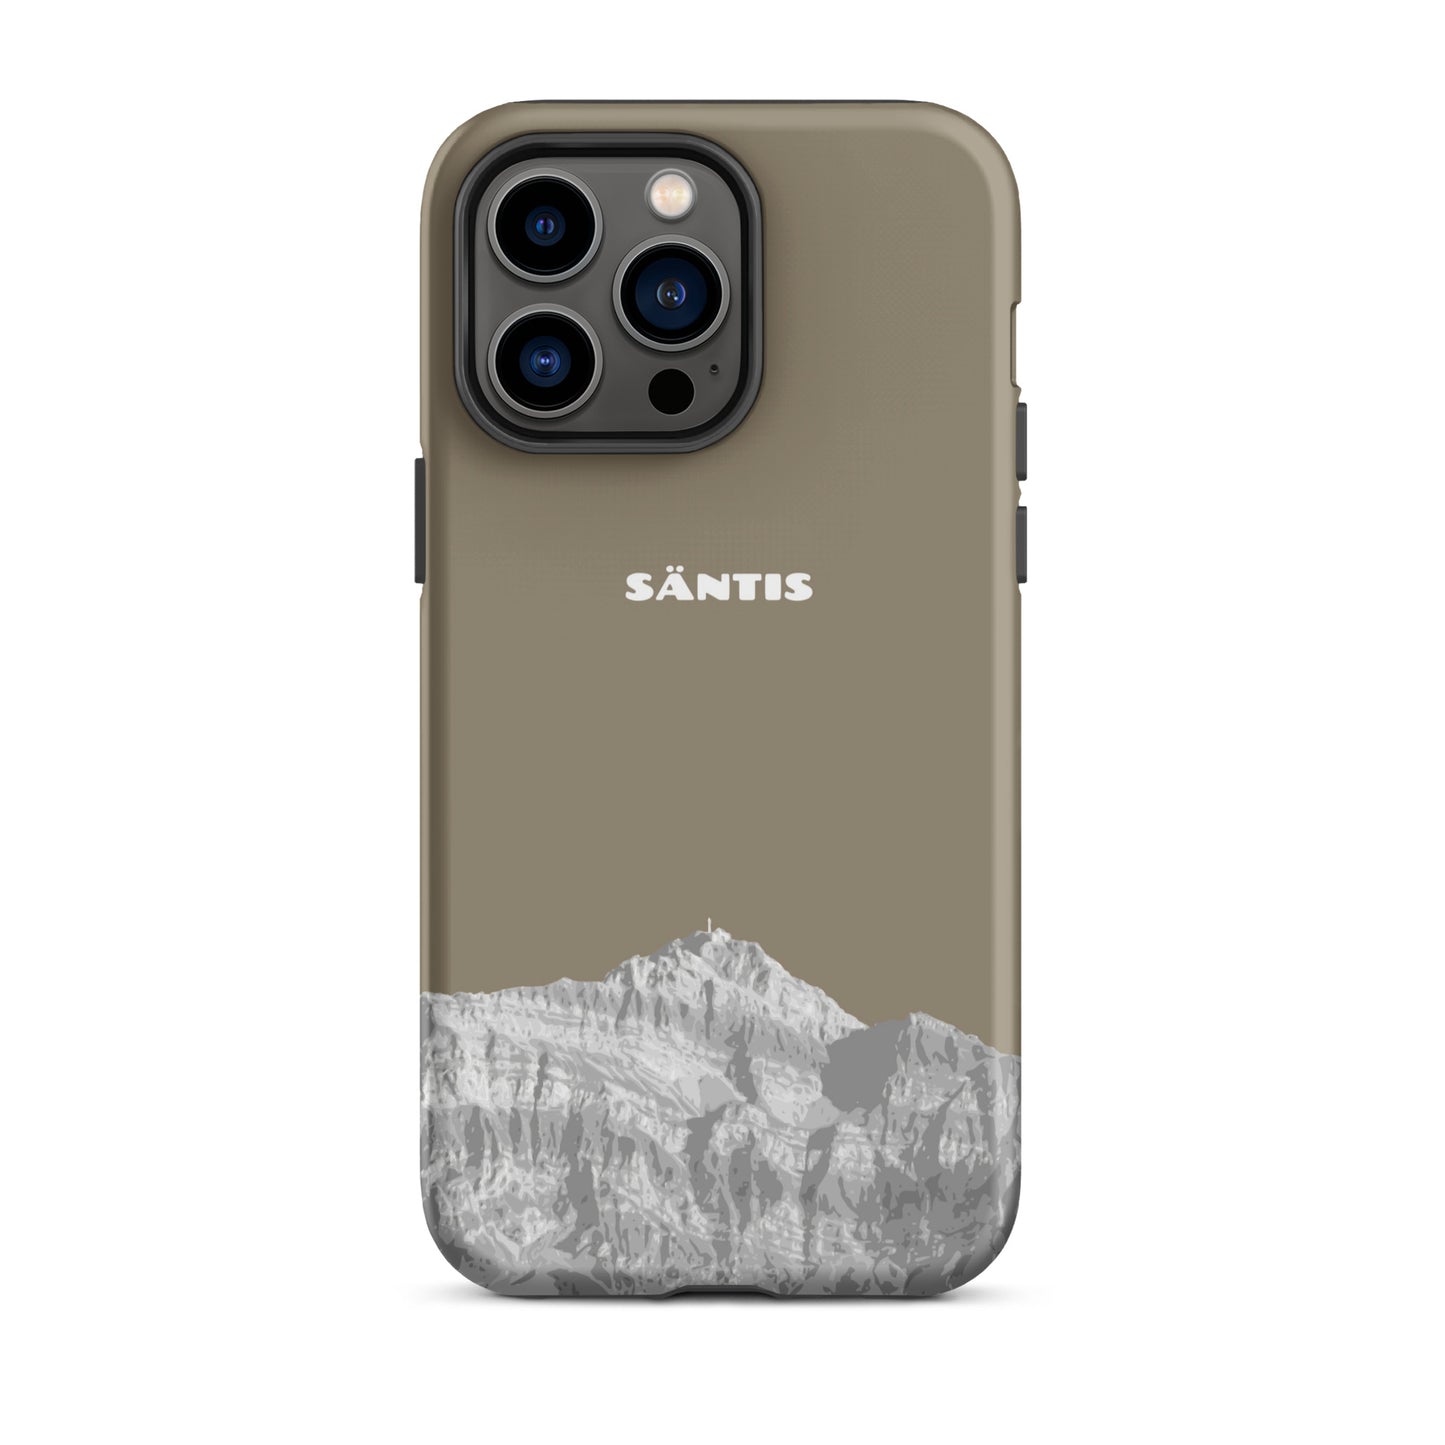 Hülle für das iPhone 14 Pro Max von Apple in der Farbe Graubraun, dass den Säntis im Alpstein zeigt.